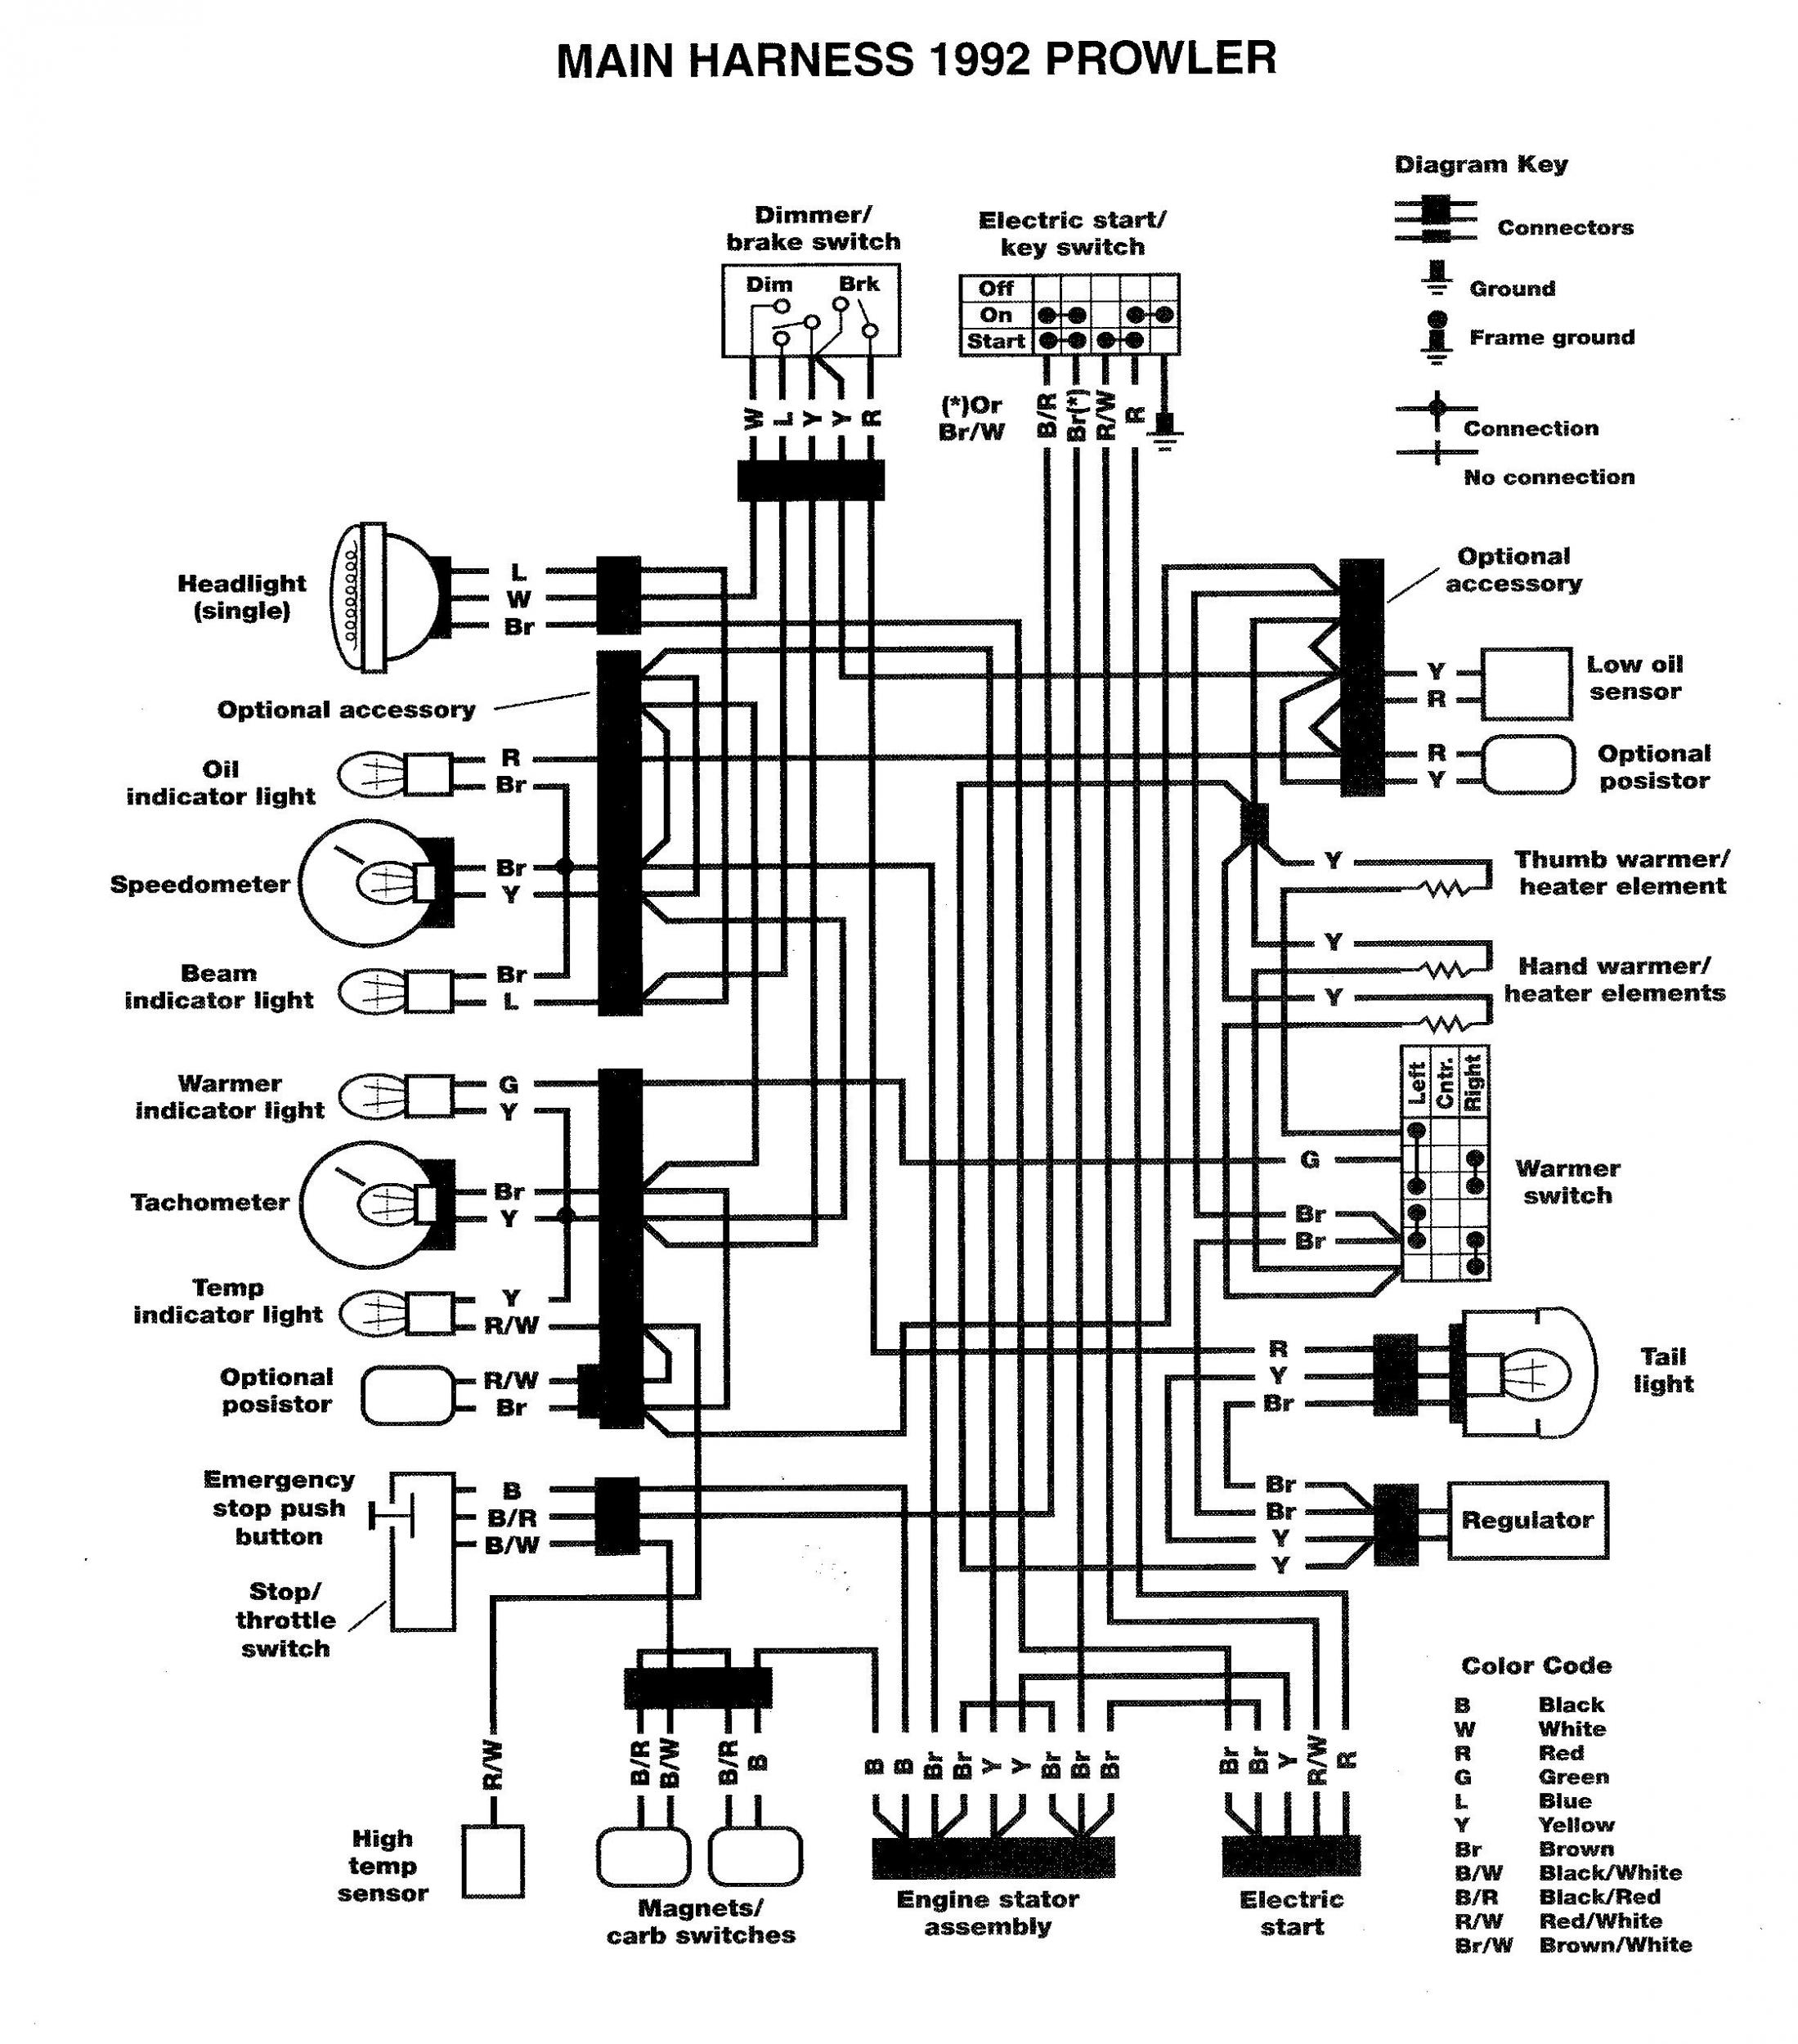 Color Code Wireing Diagram Artic Cat Atv 400 Auto